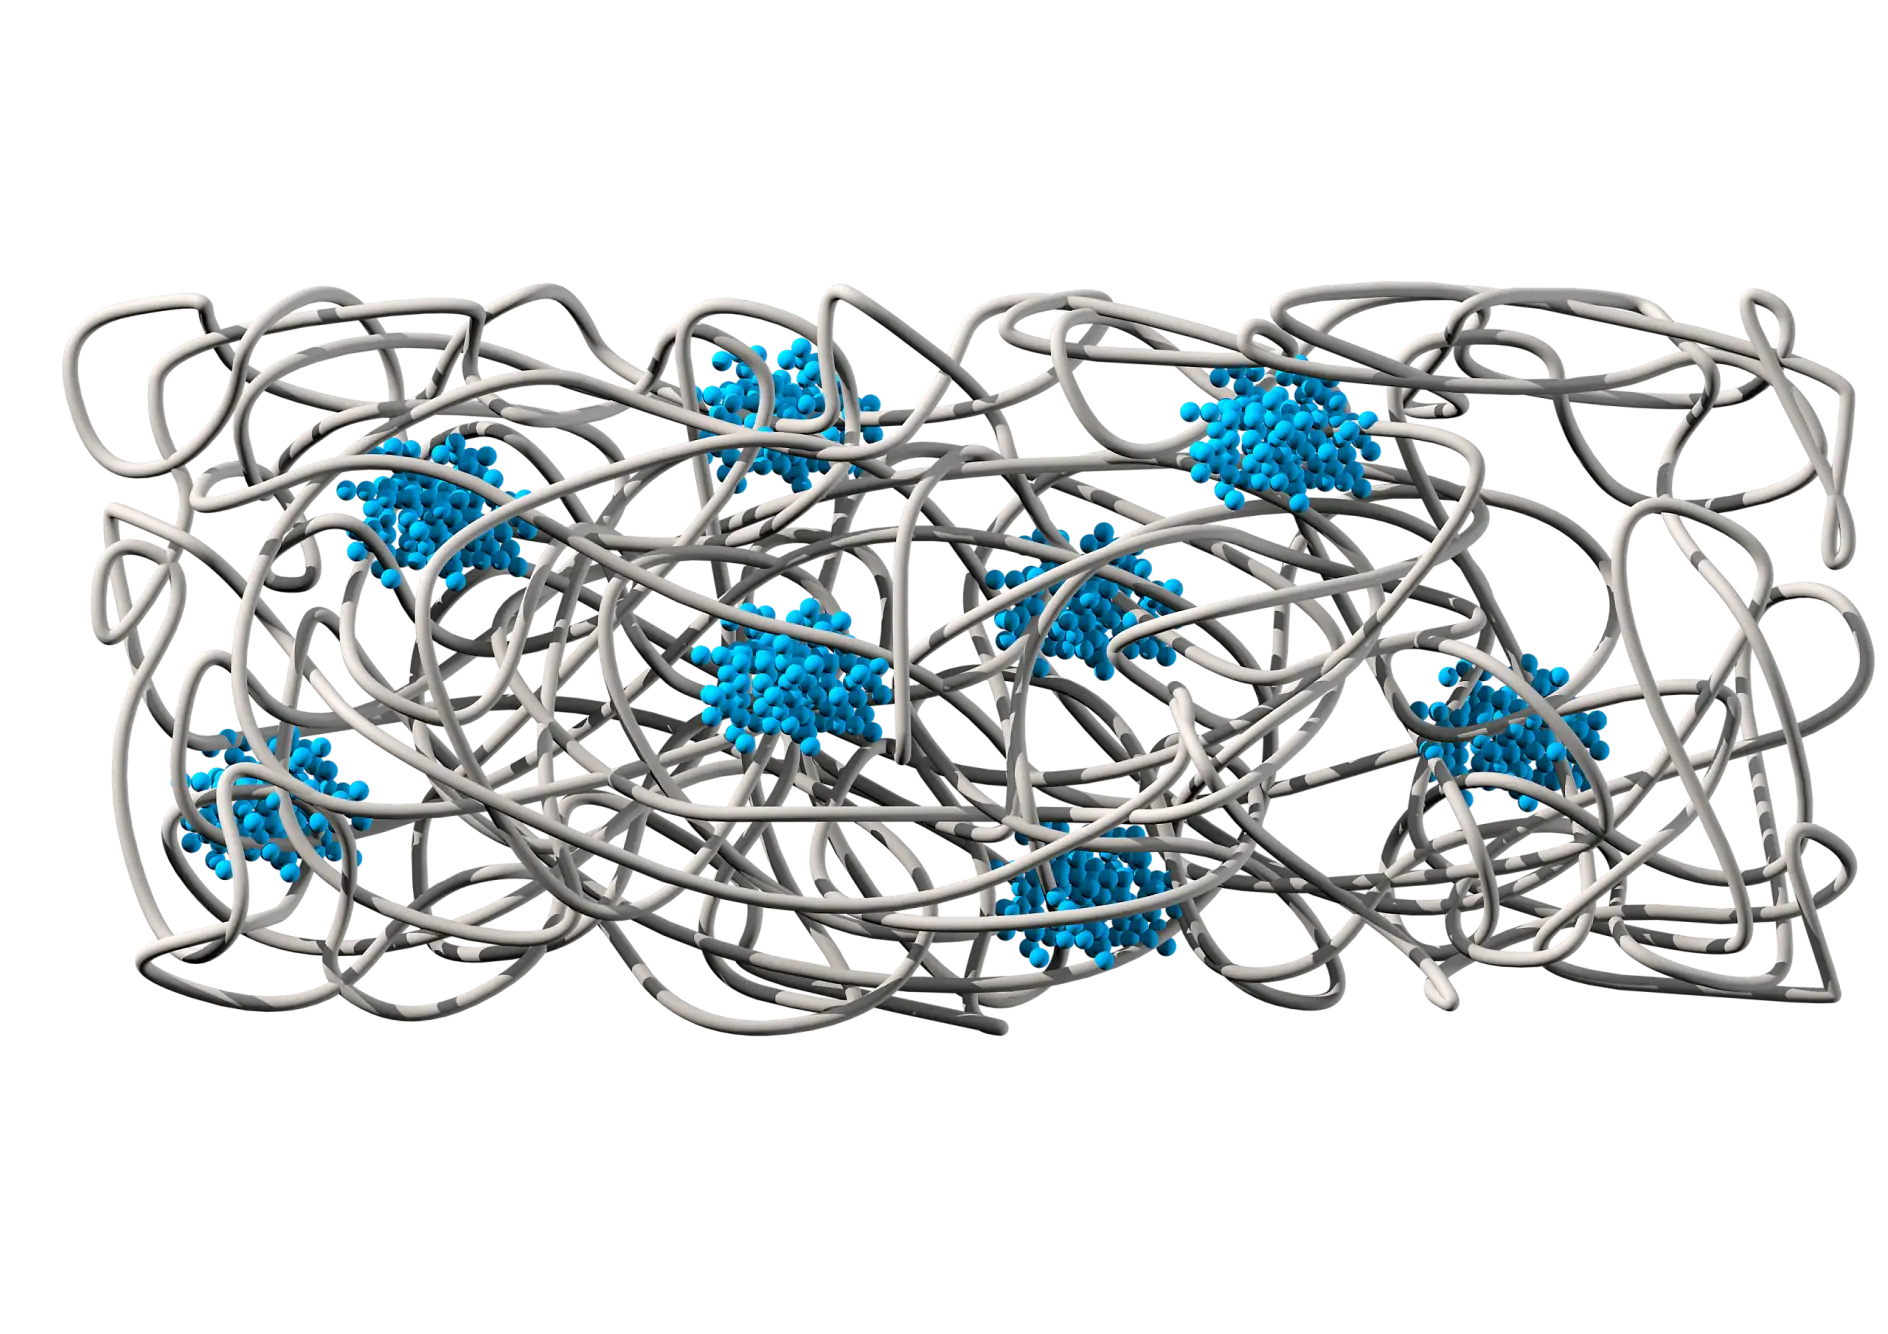 Ķīmiskā struktūra attēlo gumijas matricu (pelēkā krāsā), kas nodrošina adhēziju un elastību, un polistirola laukus (zilā krāsā), kuri nodrošina kohēziju un pārplēšanas pretestību.